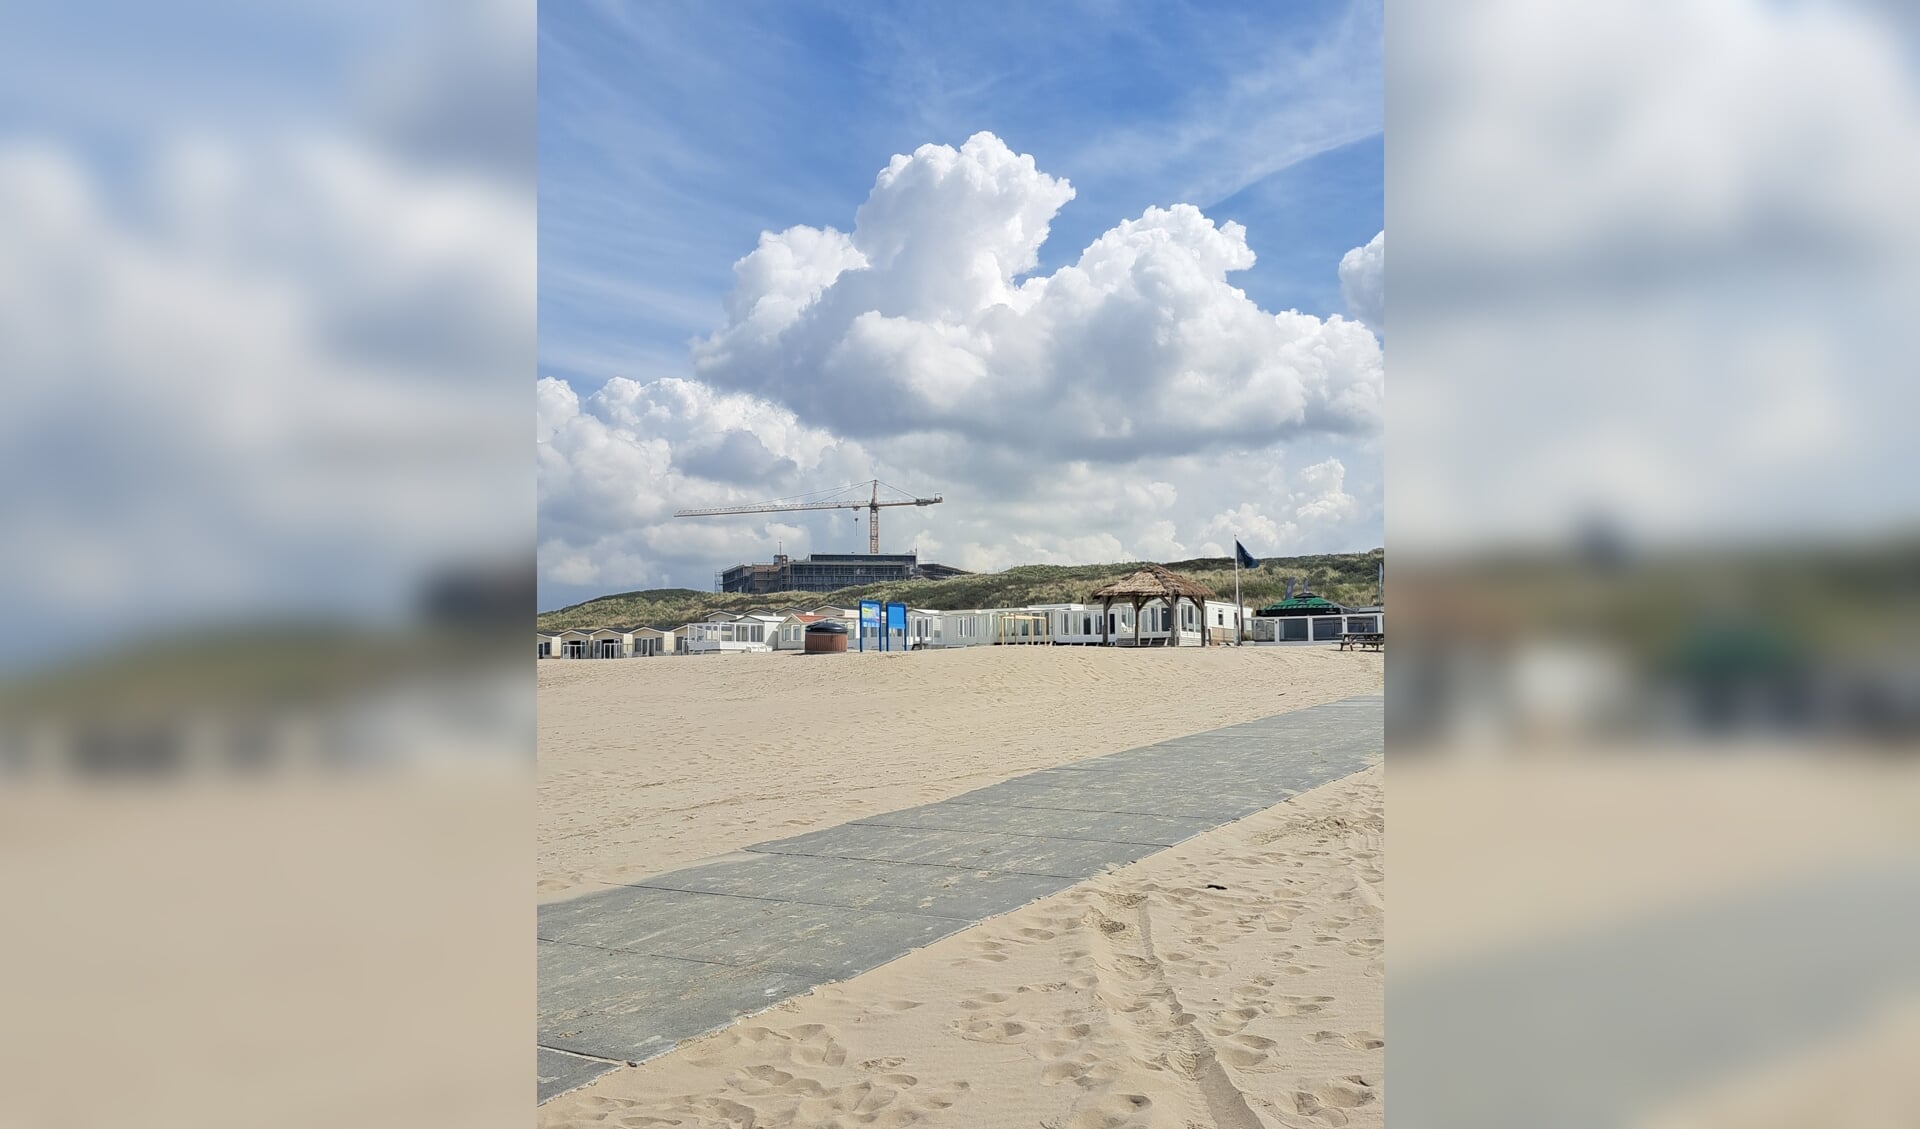 Beachclub Sunsea in Wijk aan Zee.